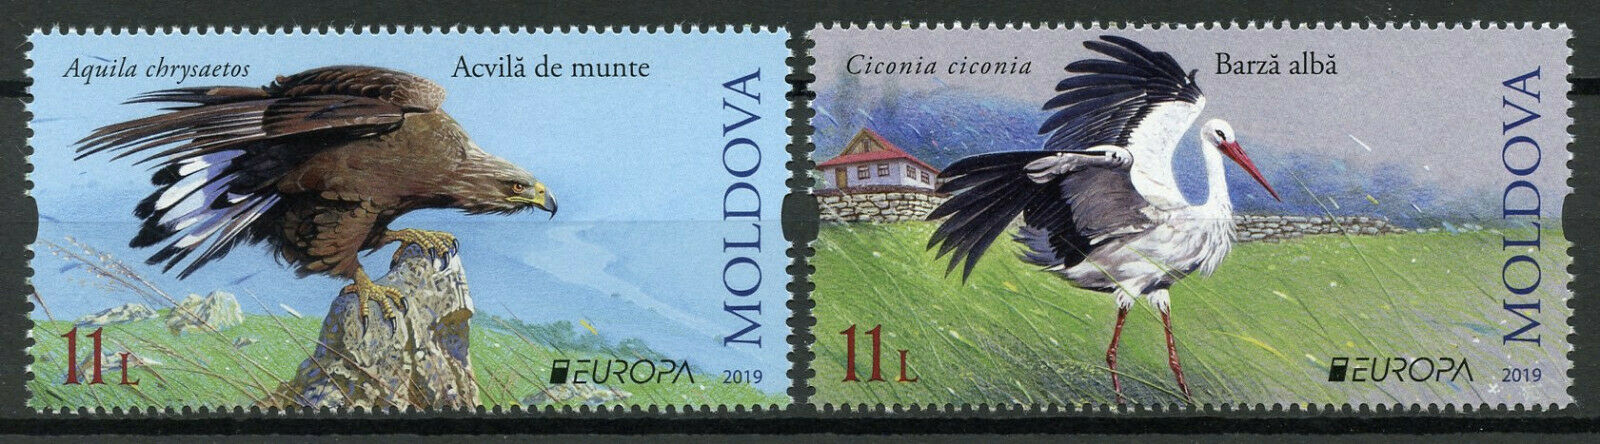 Moldova 2019 MNH Birds Europa Storks Golden Eagles 2v Set Birds on Stamps